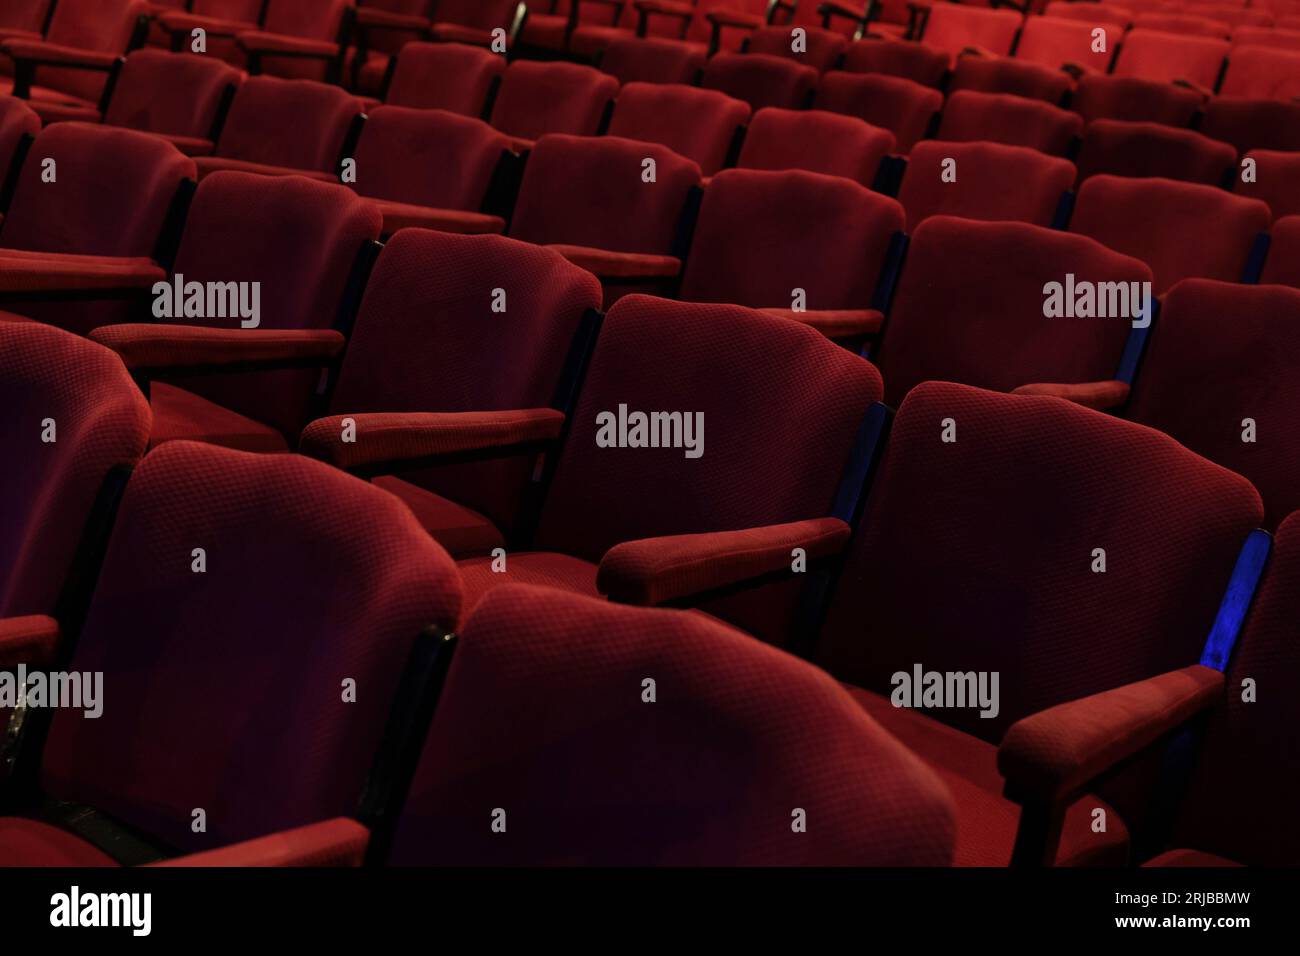 Rangées vides de chaises en tissu rouge profond ou de sièges avec accoudoirs dans un théâtre ou une salle de cinéma. Banque D'Images